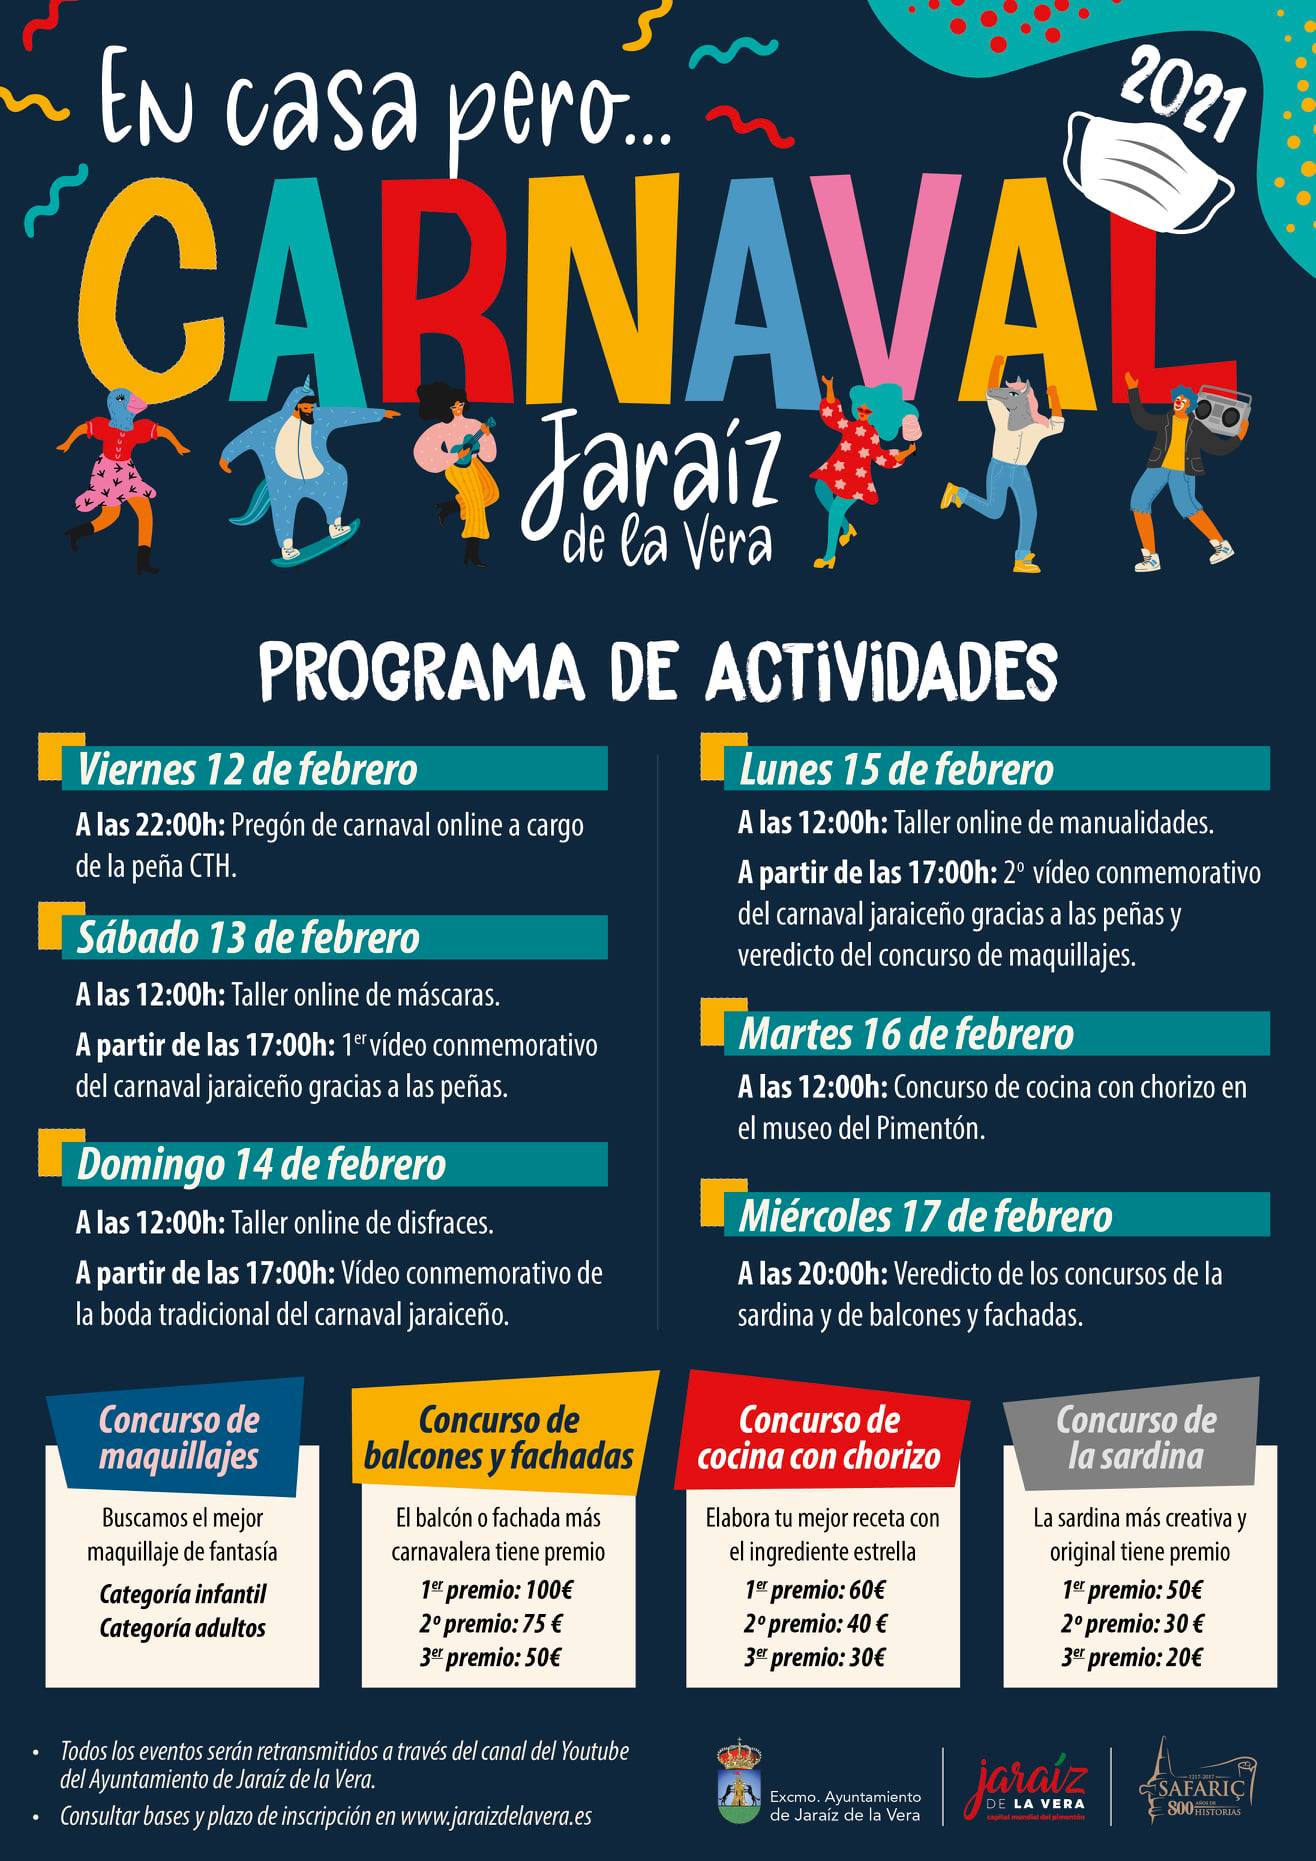 Carnaval (2021) - Jaraíz de la Vera (Cáceres) 2